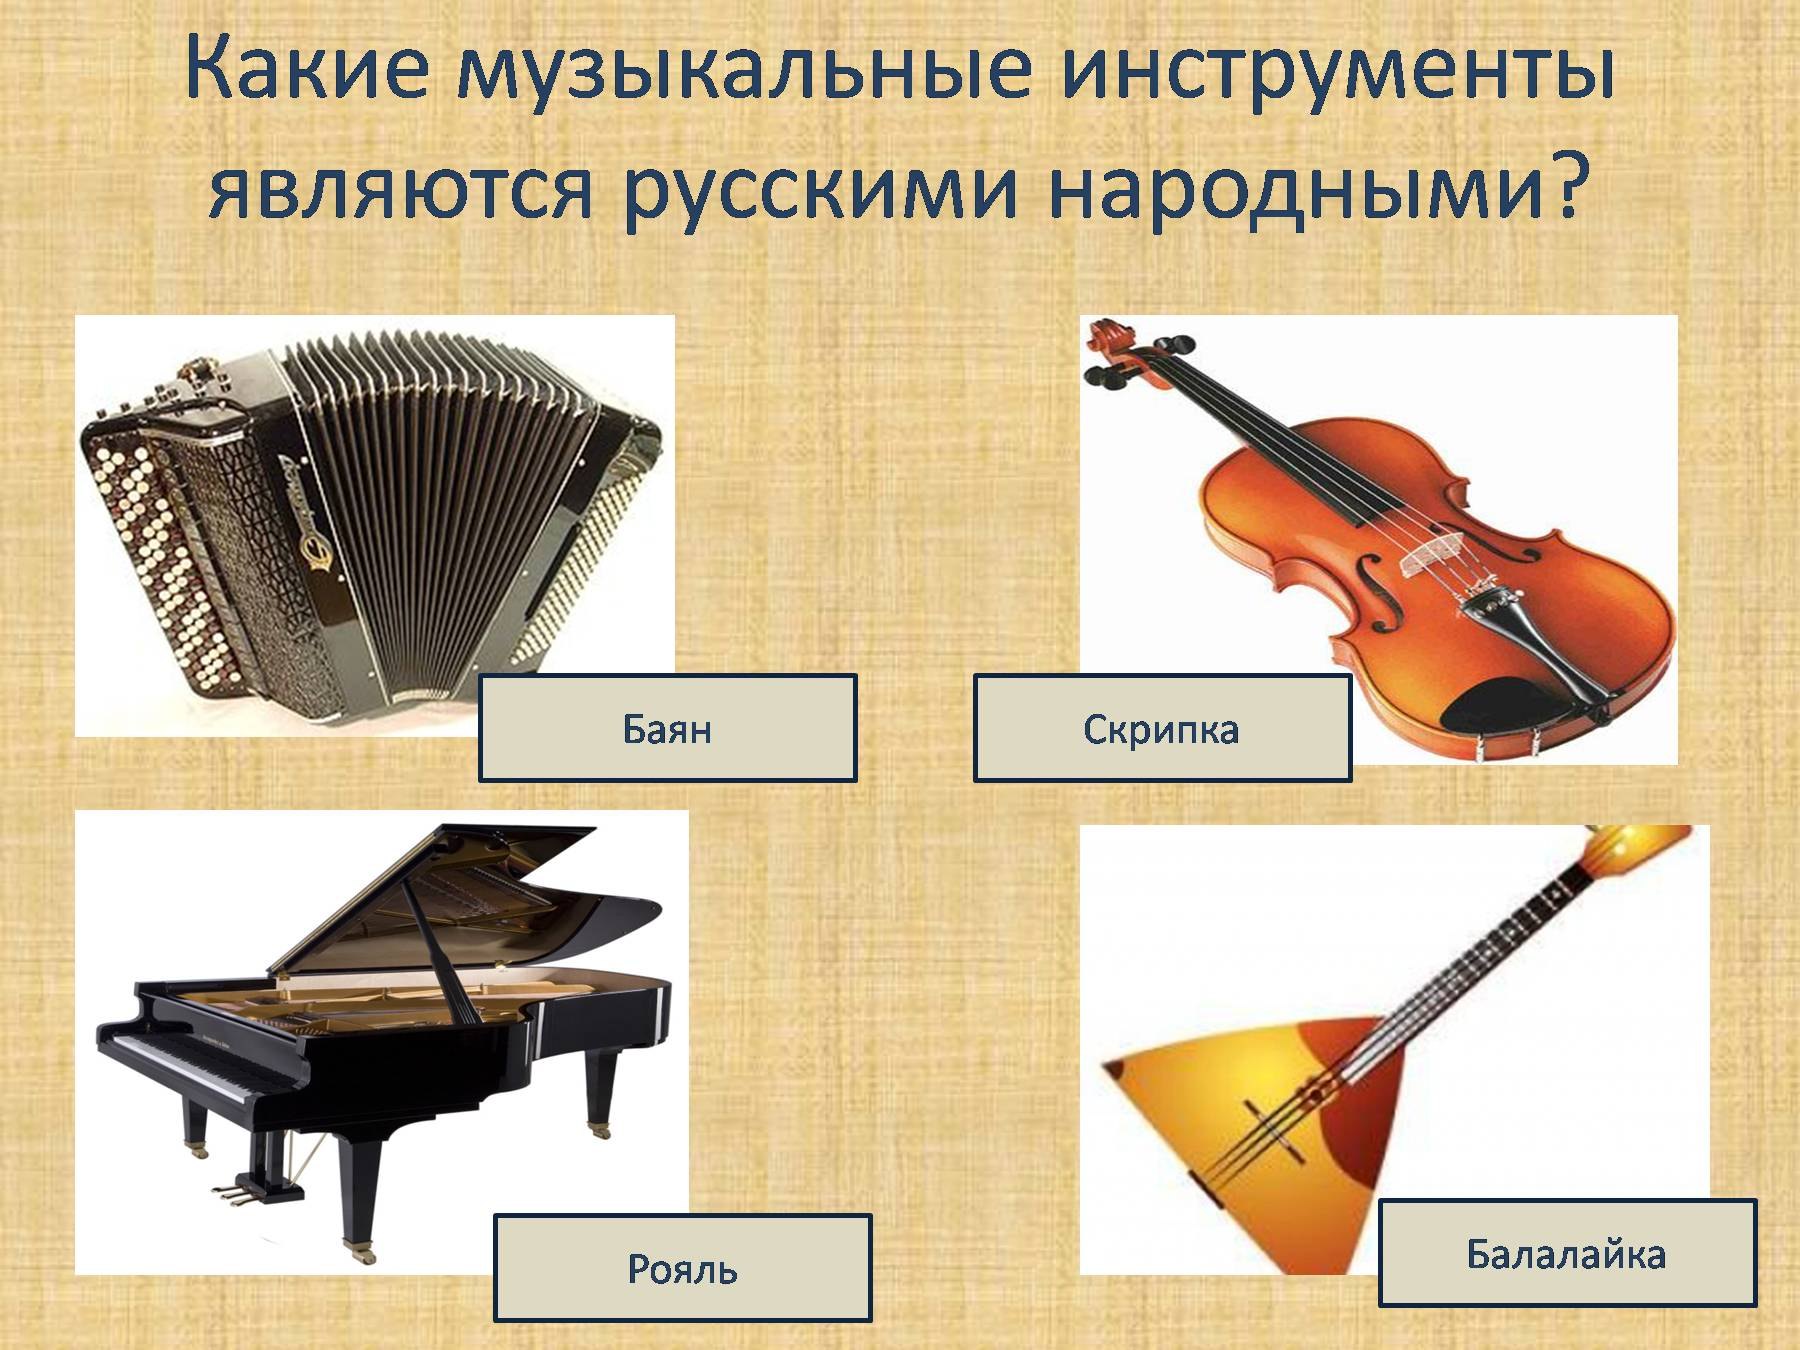 Какие музыкальные инструменты являются русскими народными